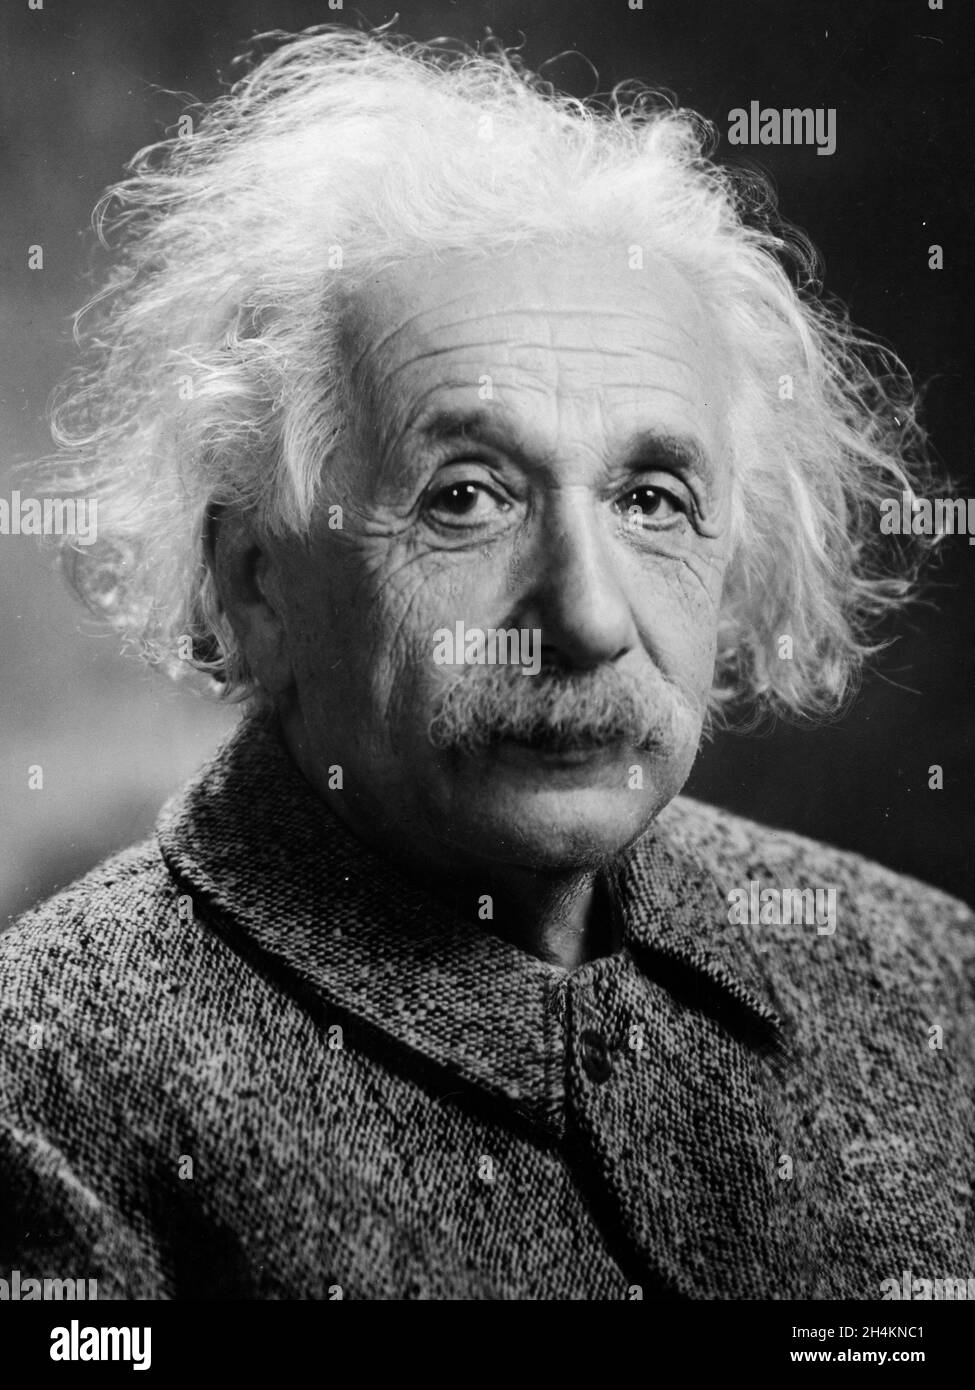 USA - 1947 - Porträt von Albert Einstein, aufgenommen 1947 in den USA - Foto: Geopix/Oren Turner Stockfoto